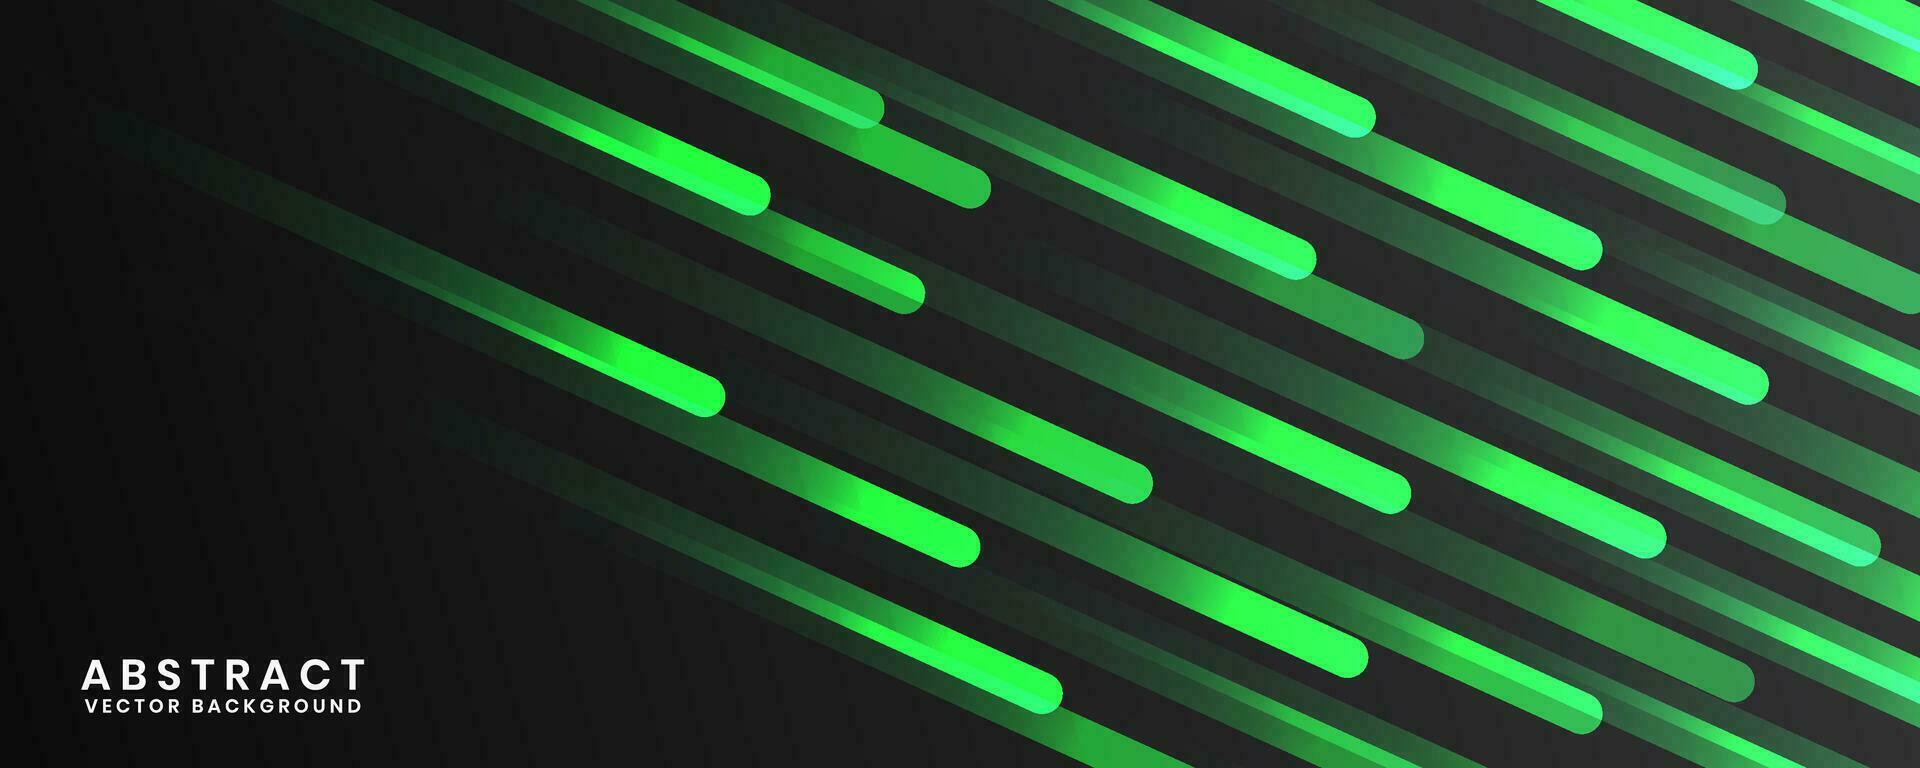 3d svart geometrisk abstrakt bakgrund överlappning lager på mörk Plats med grön avrundad rader dekoration. modern grafisk design element randig stil begrepp för baner, flygblad, kort, eller broschyr omslag vektor